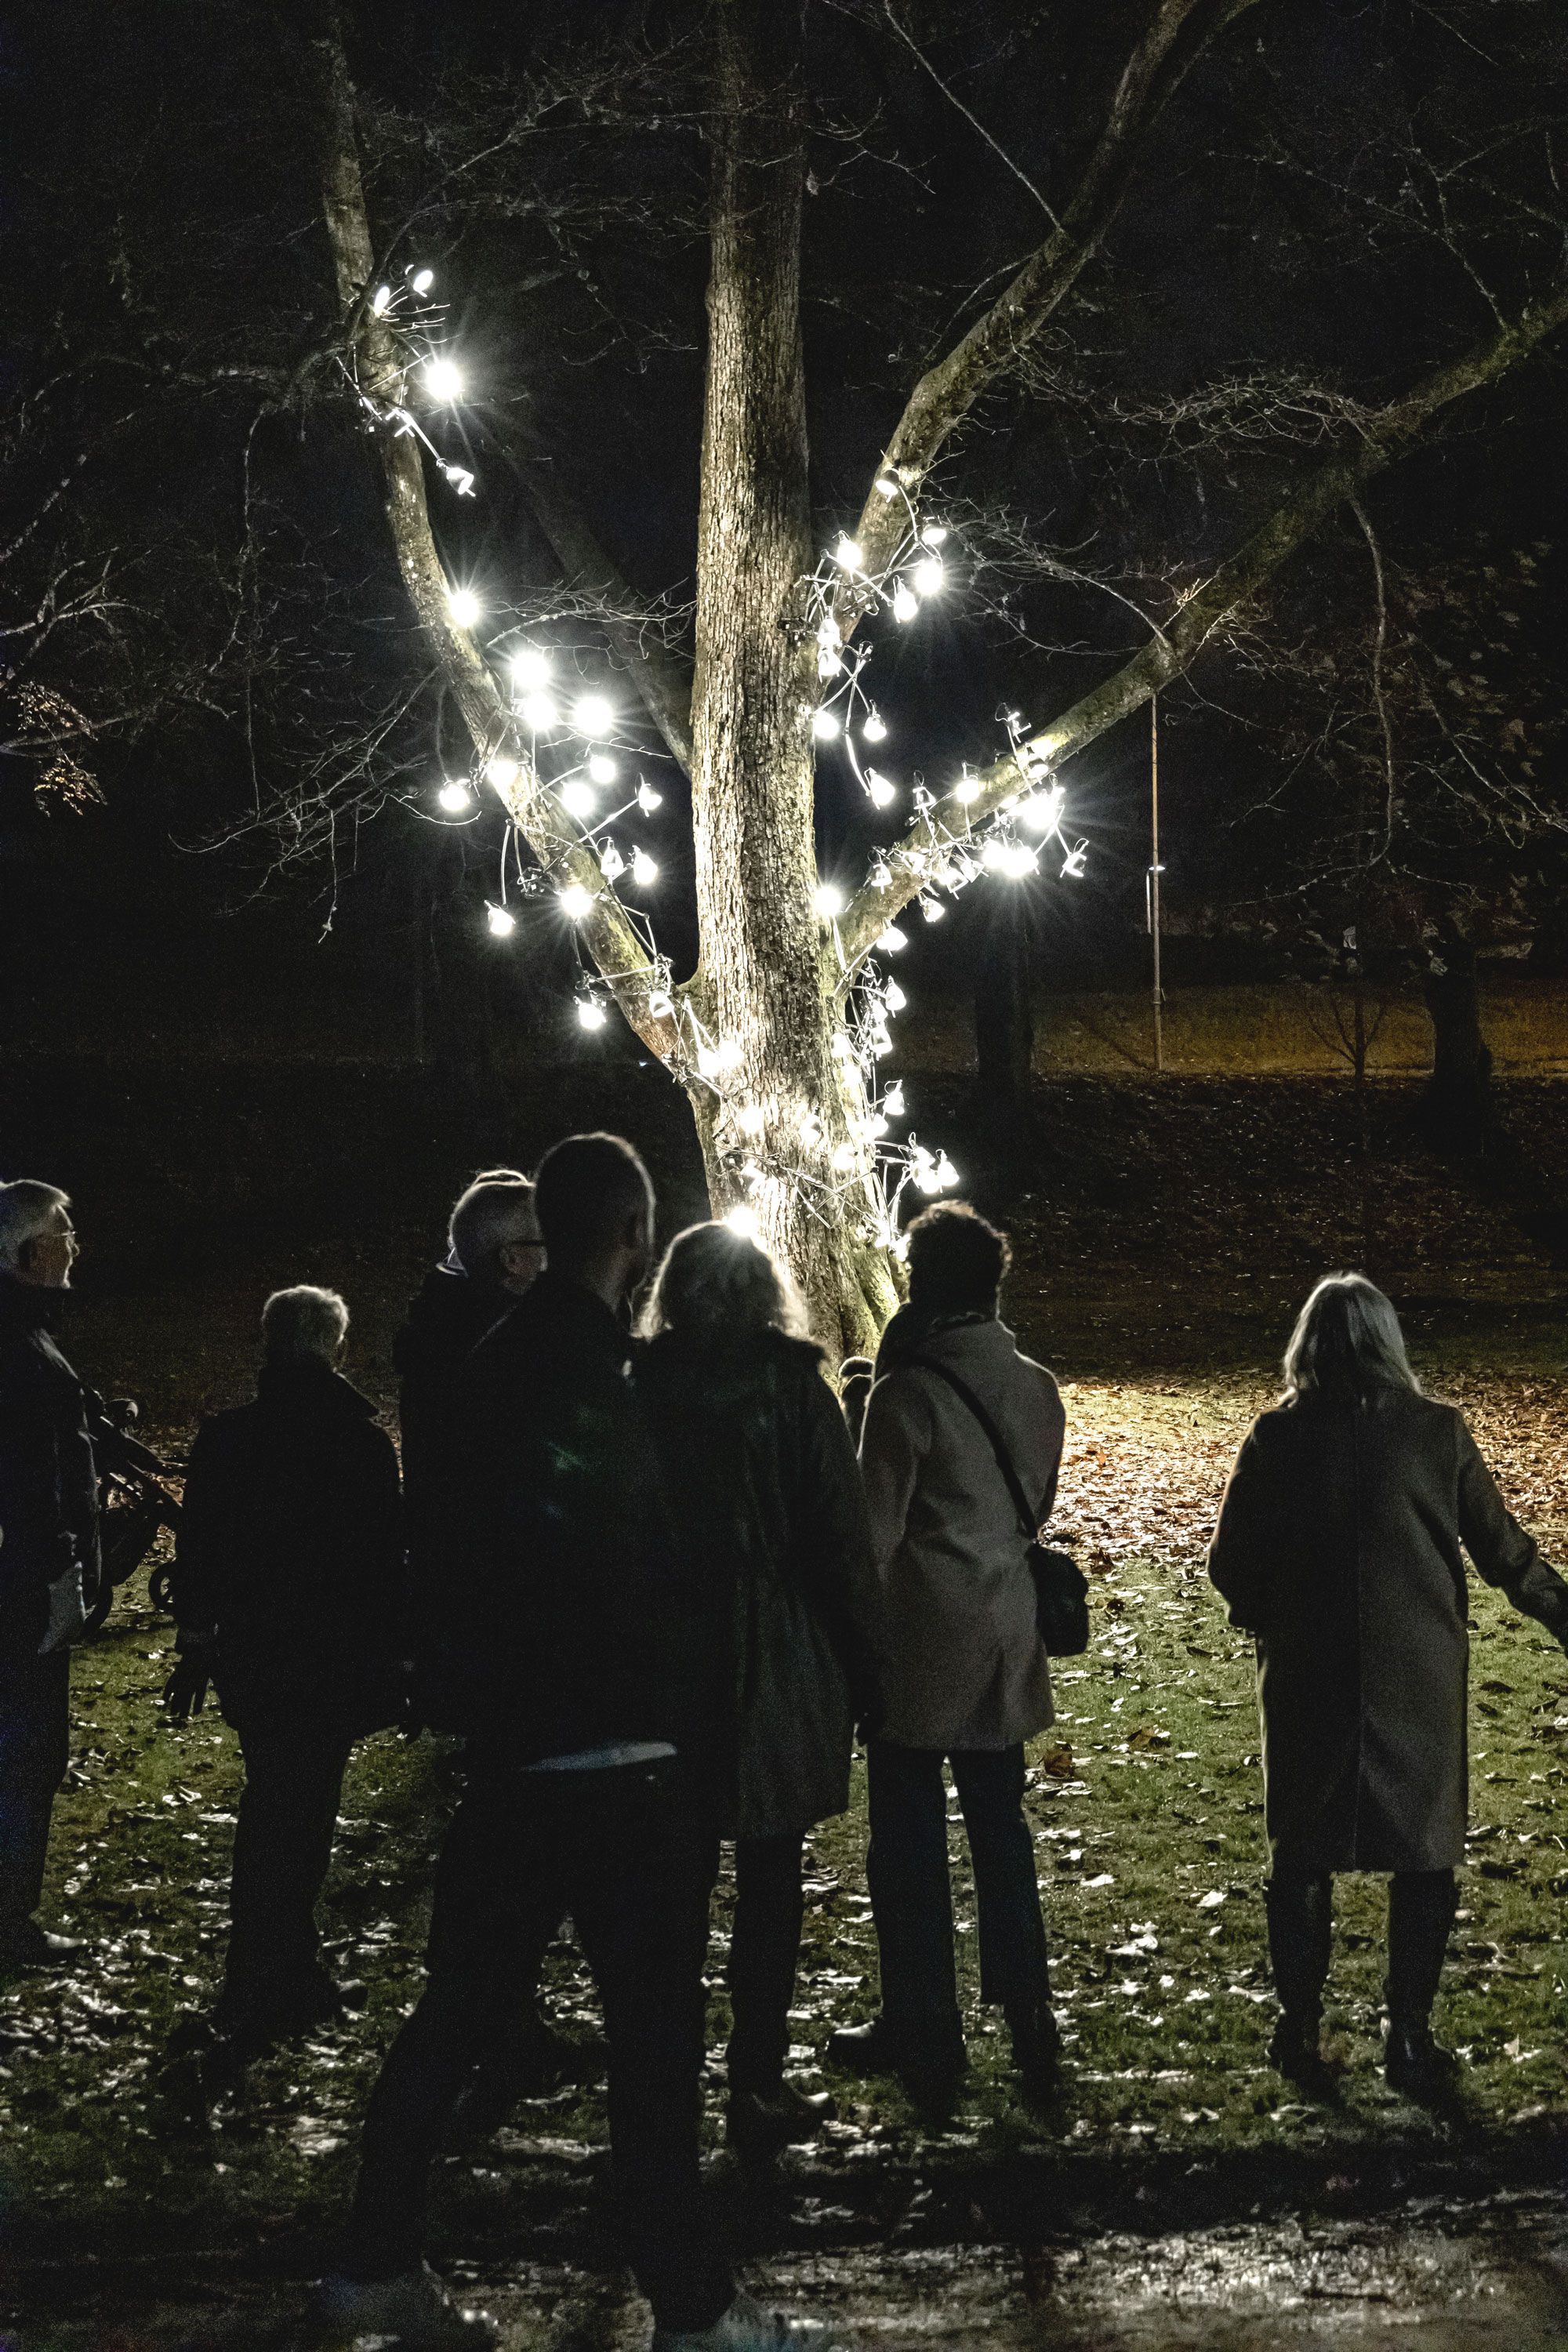 Ett tiotal personer som i kvällsmörker betraktar ett träd med ett hundratal lampor i.